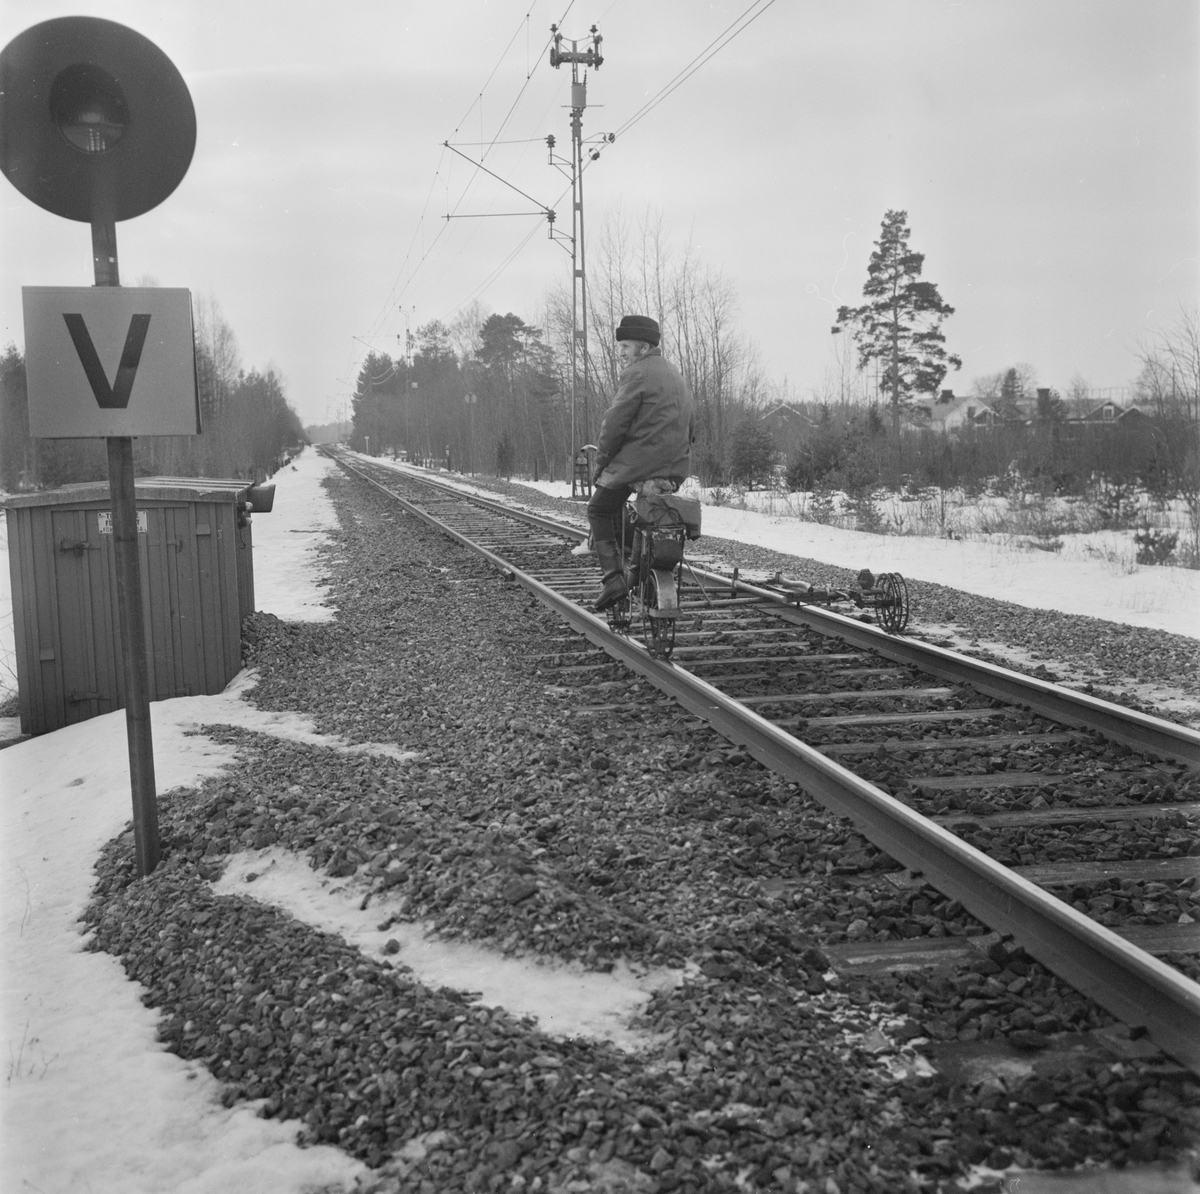 Tierpståg säkrare tack vare besiktningsman Häggström, Uppland, sannolikt januari 1978